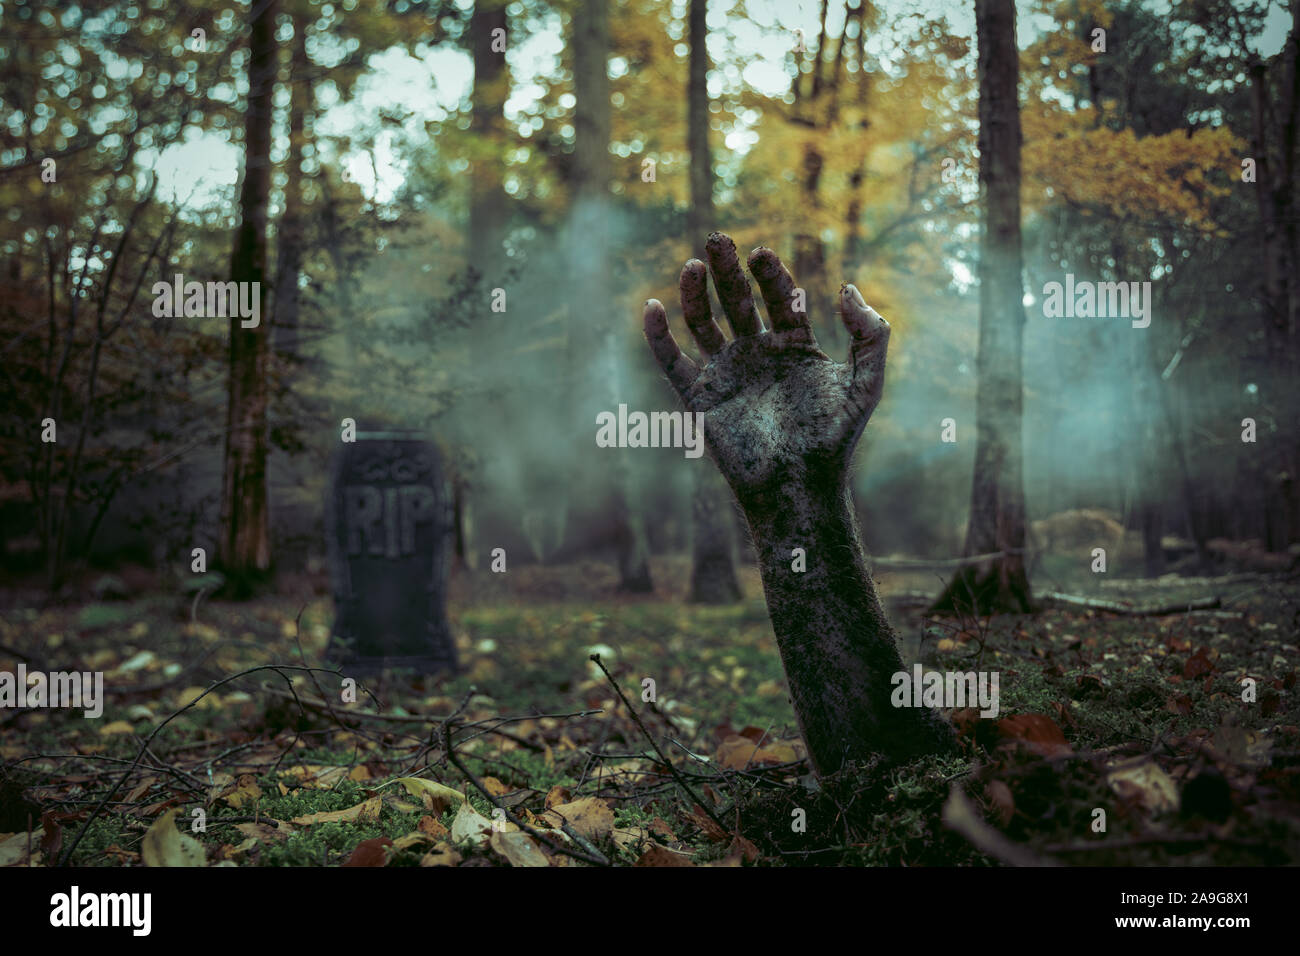 Eine Hand und Arm aus dem schmutzigen Boden mit einem Grabstein in der Hintergrund, den nebligen Wäldern Lage gibt eine gespenstische Atmosphäre im 'Zombie' Stil Stockfoto